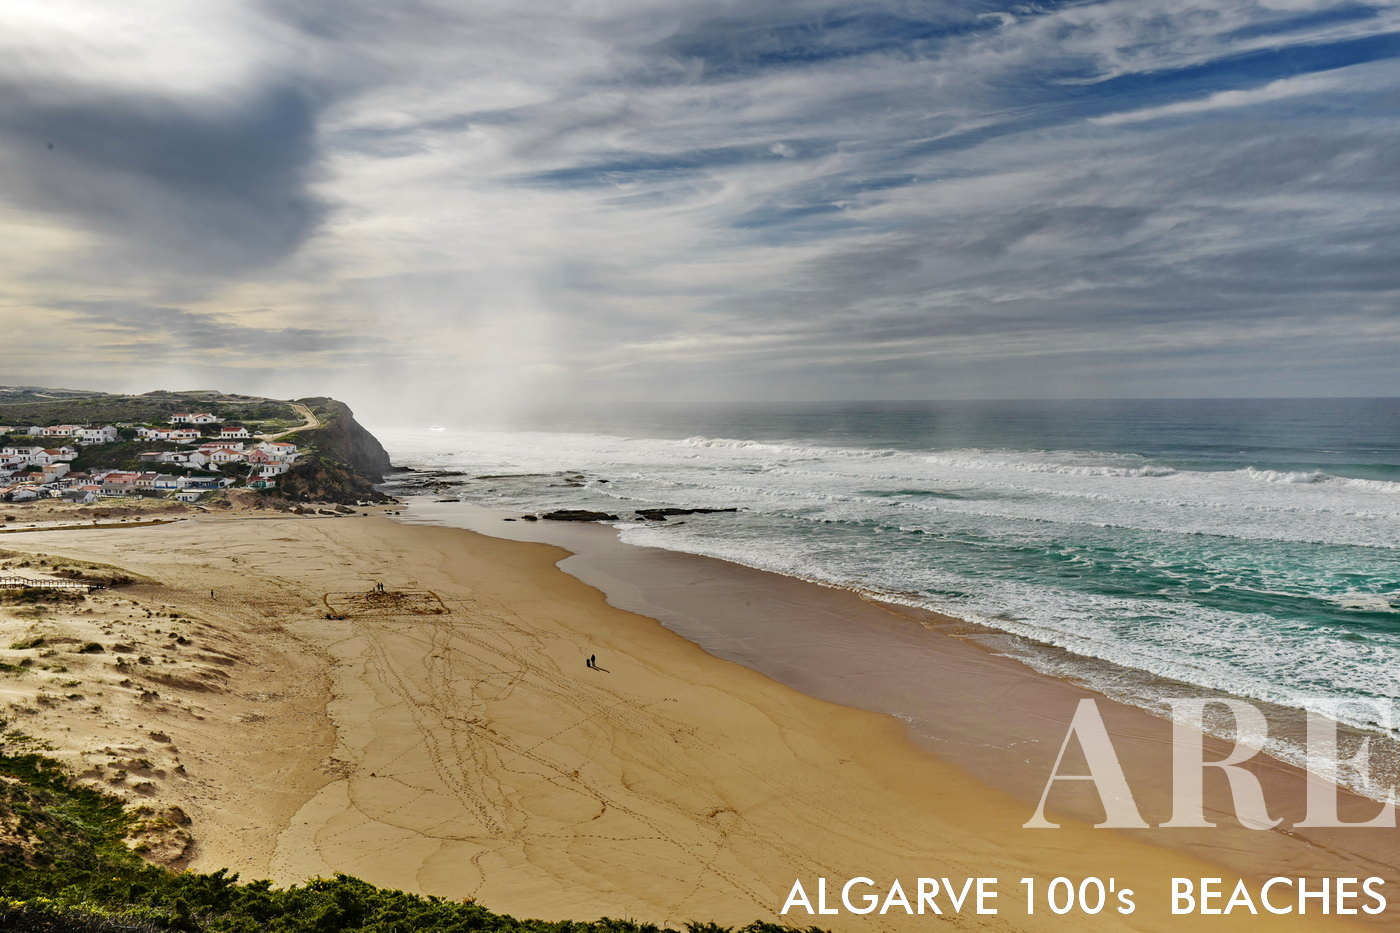 O inverno na Praia de Monte Clérigo no Algarve, Portugal apresenta um ambiente tranquilo. A praia meia-lua é cercada por uma pitoresca vila de casas, oferecendo um cenário panorâmico para uma caminhada rápida ao longo da costa.